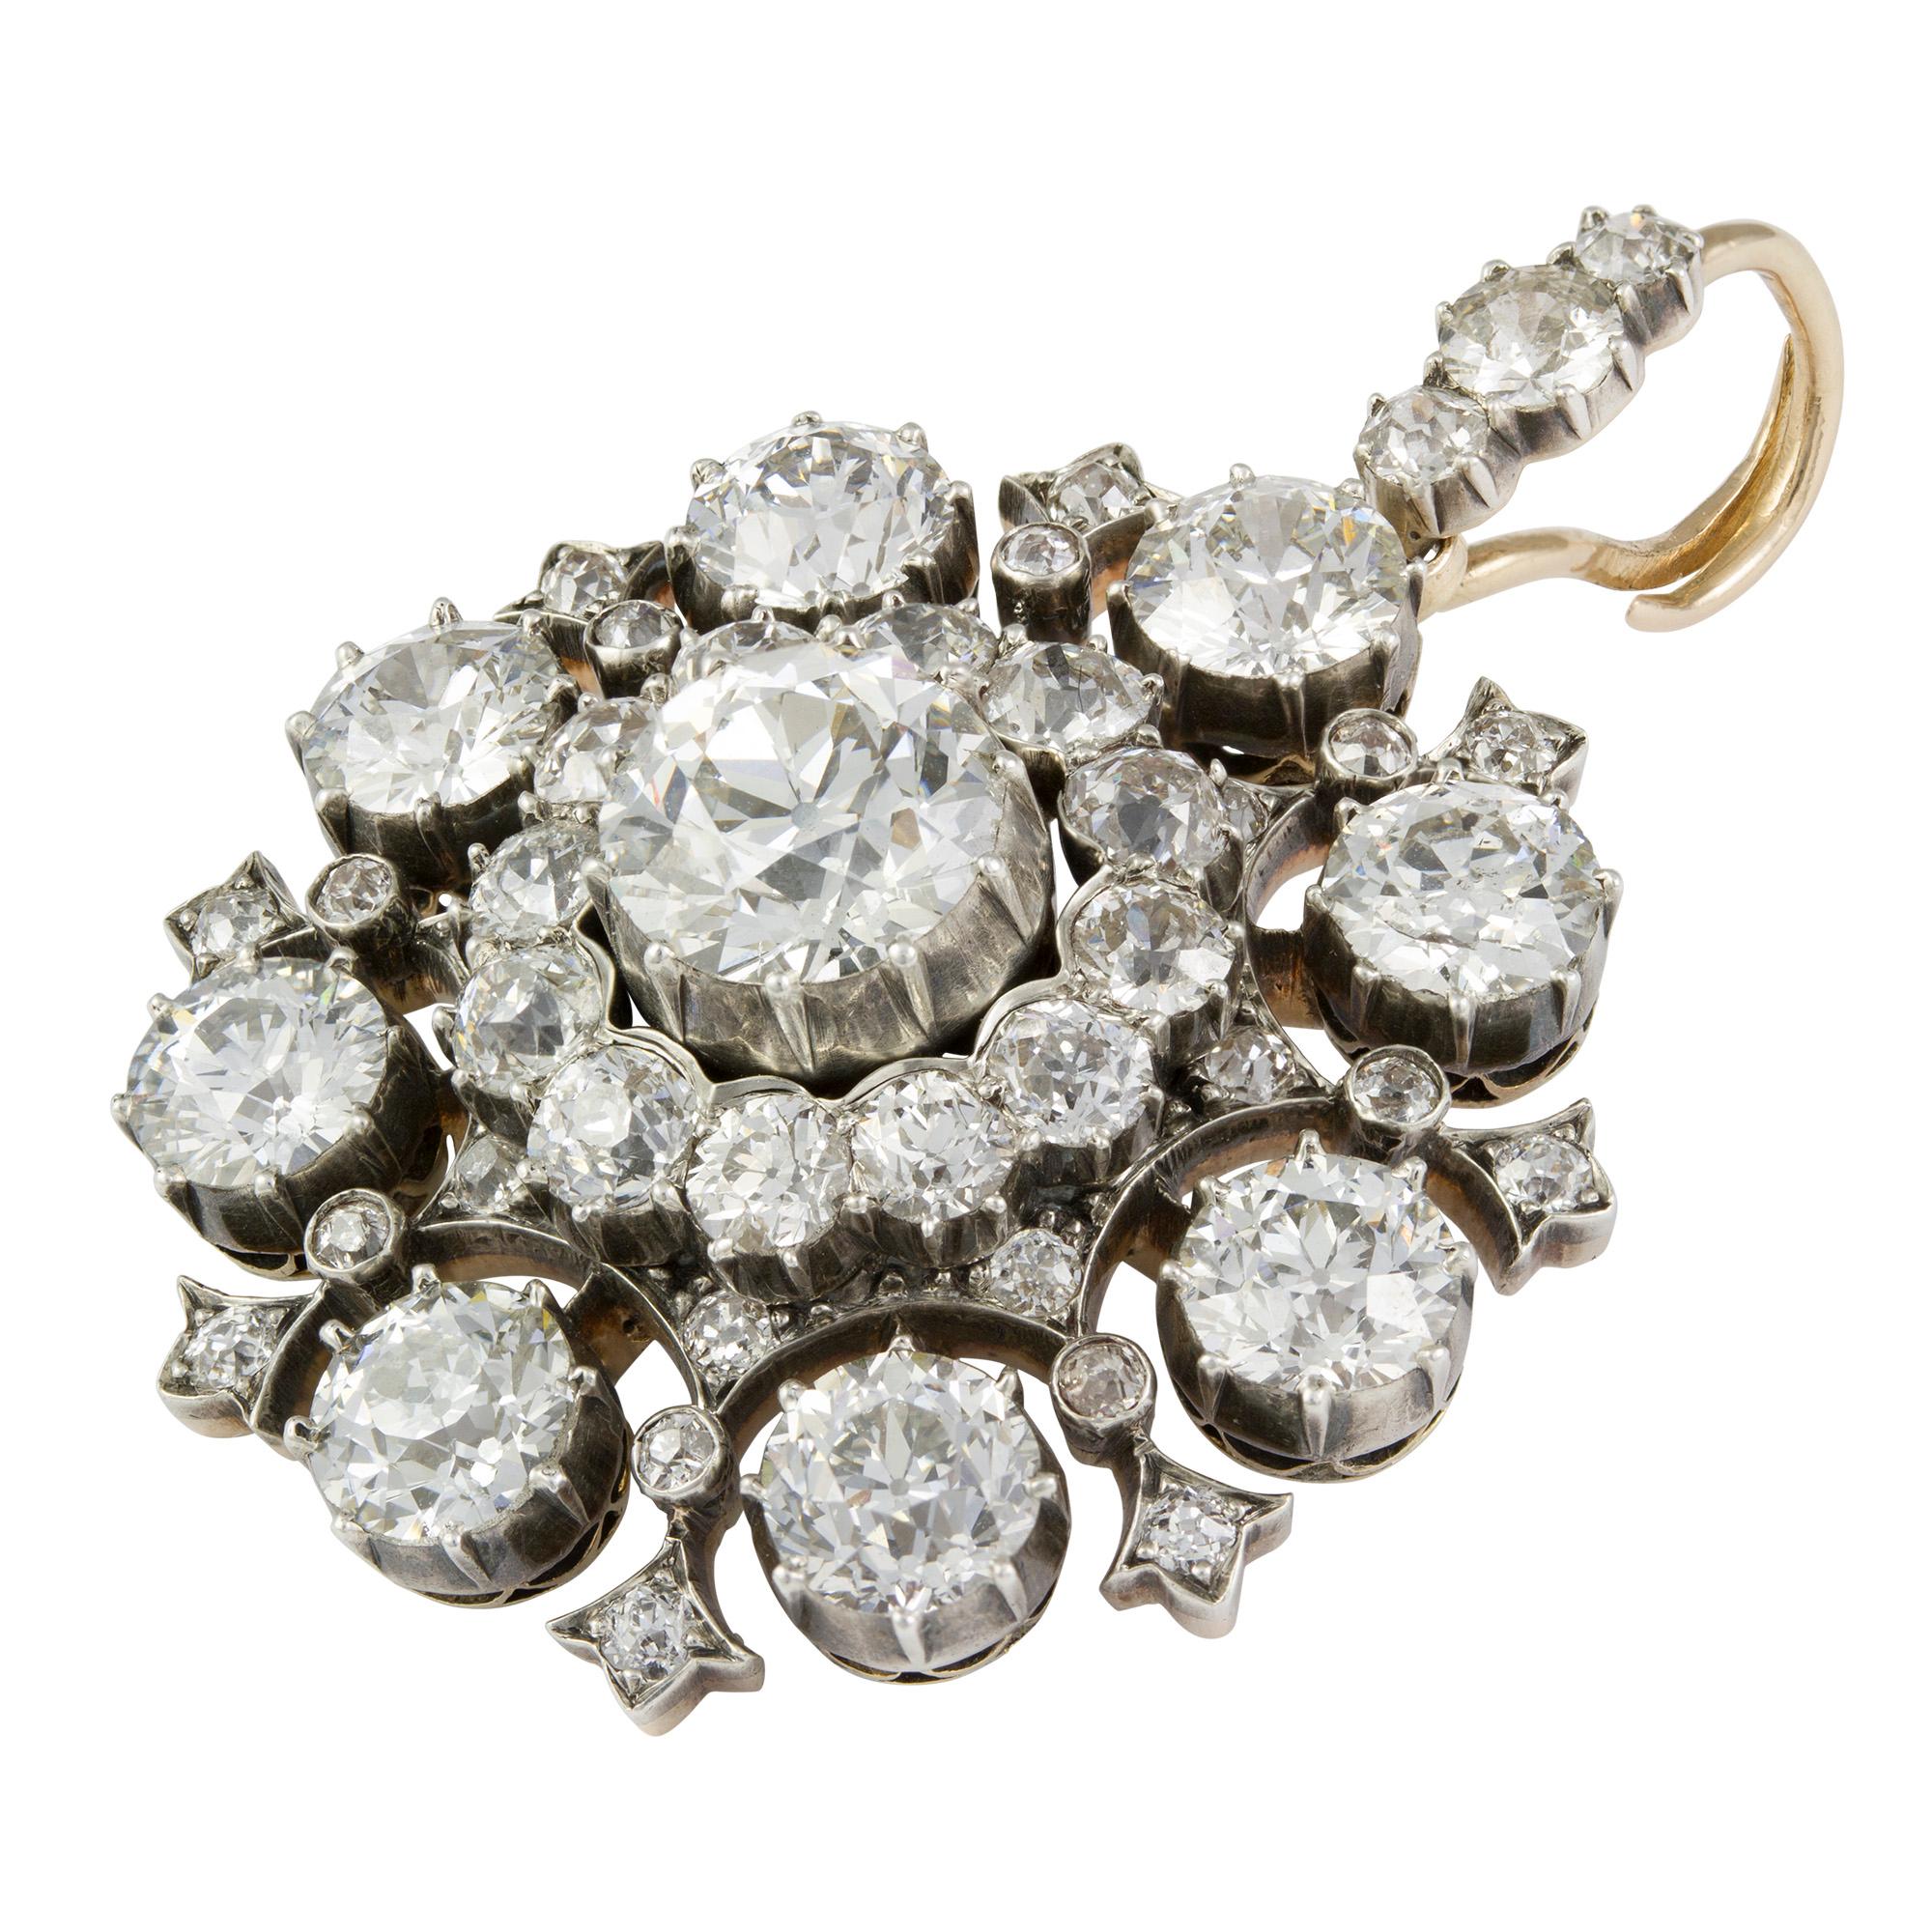 Eine Diamant- und Zuchtperlenkette mit einem feinen viktorianischen Diamanten in der Mitte, besetzt mit einem alten Brillanten mit einem geschätzten Gewicht von 1.65 Karat, umgeben von einem Altschliff-Diamanten-Cluster, umgeben von acht größeren